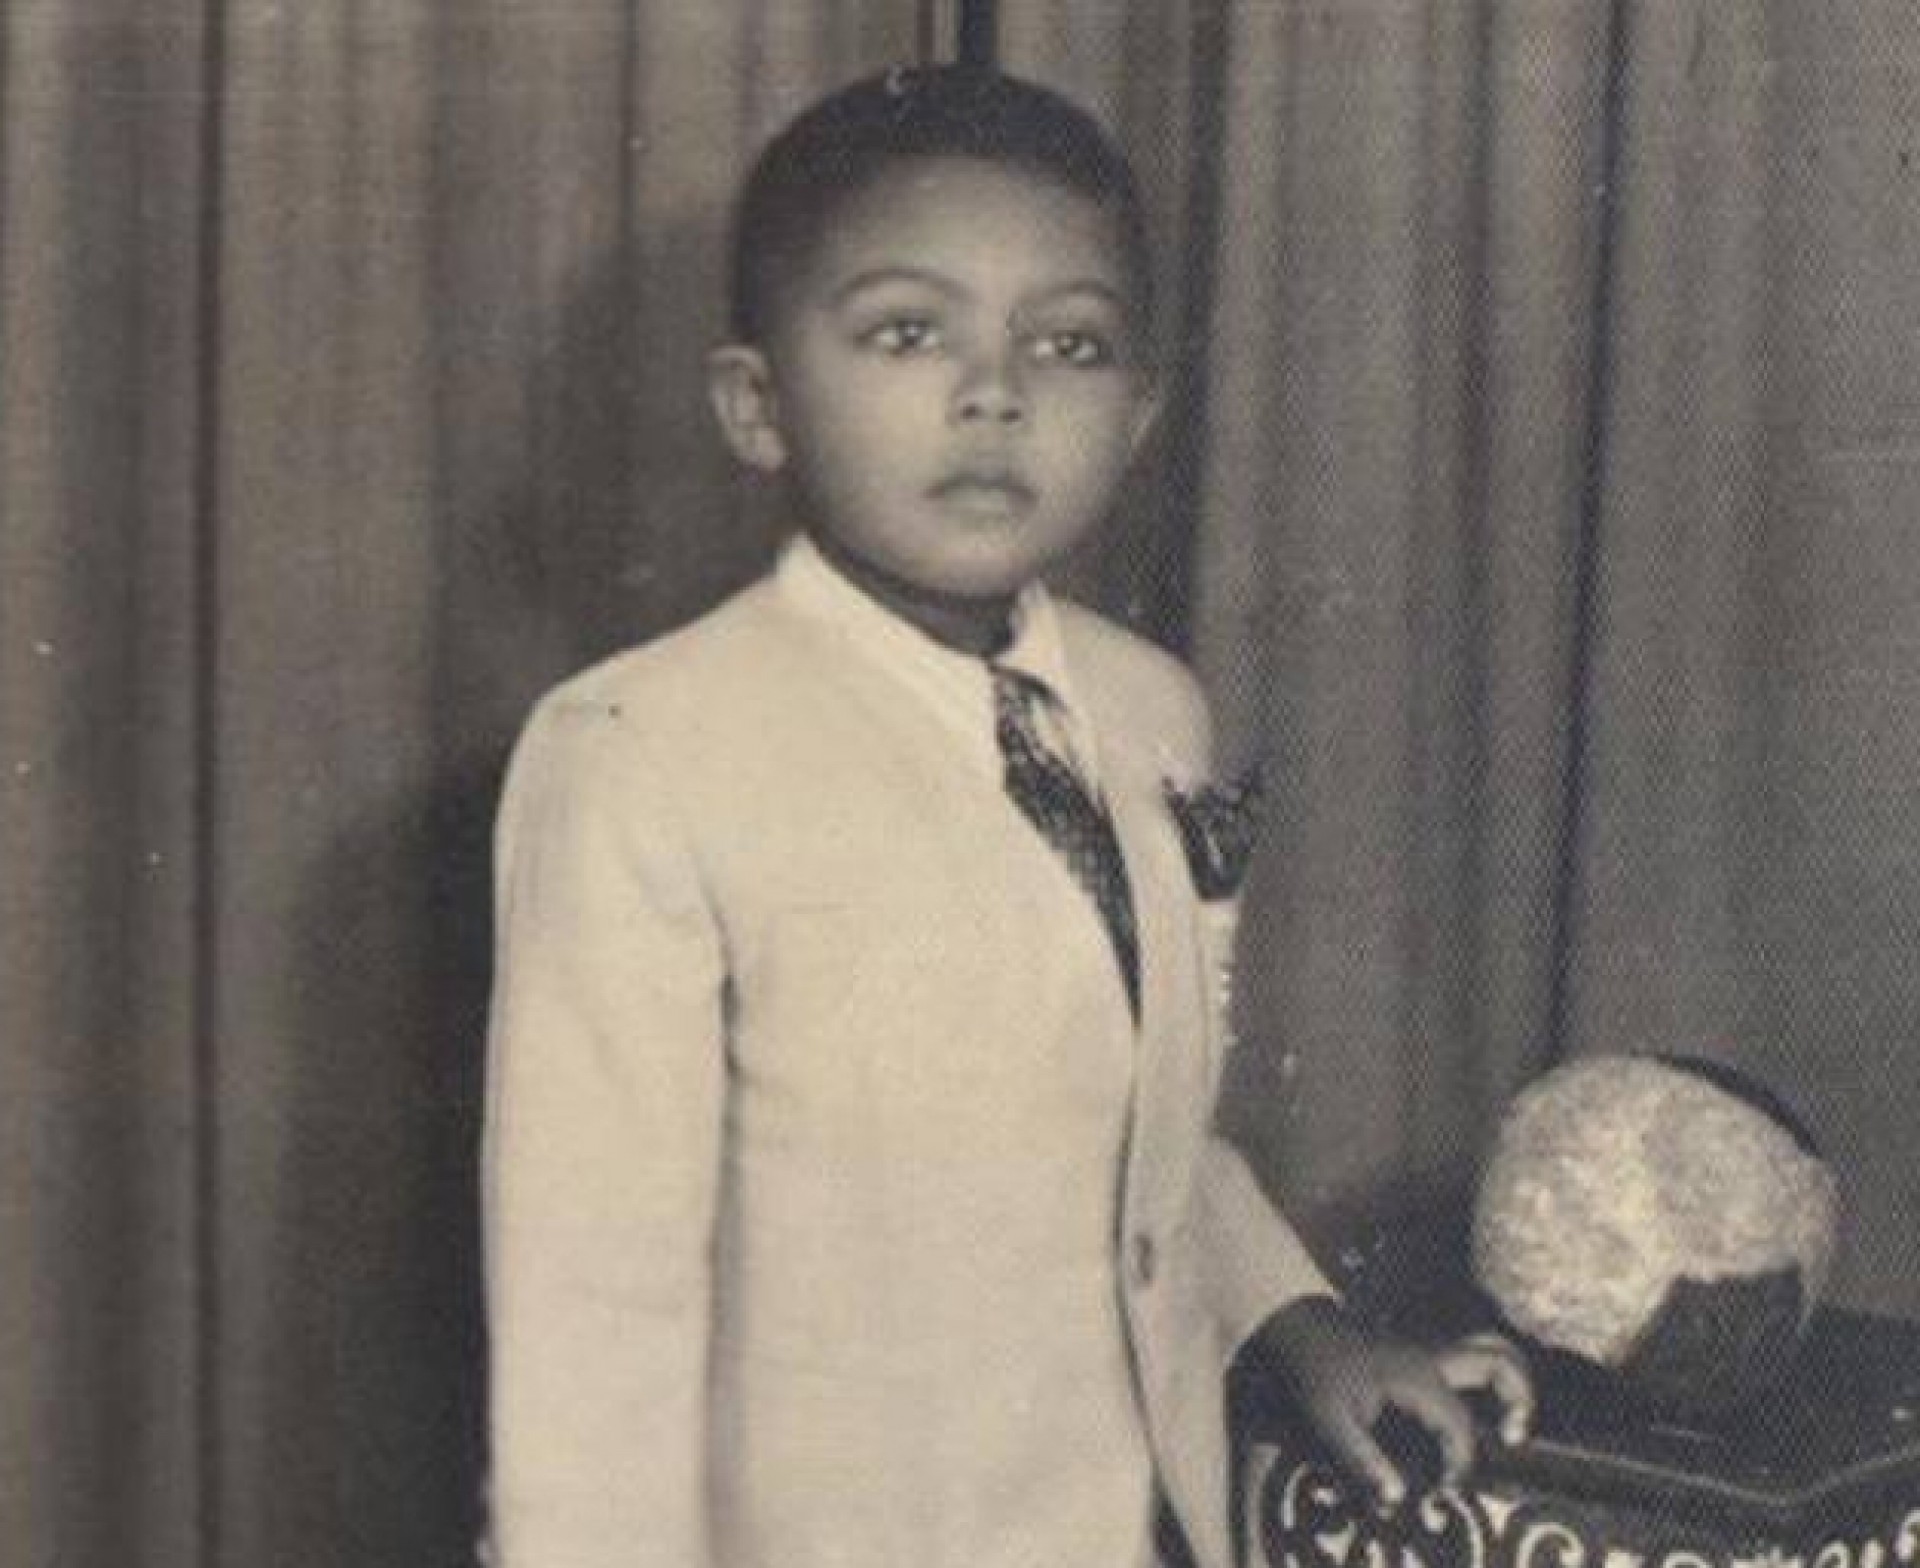 Gilberto Gil na sua infância; A imagem foi disponibilizada pelo Instituto Gilberto Gil na mostra digital "O Ritmo de Gil", do Google Arts and Culture(Foto: Instituto Gilberto Gil/Reprodução)